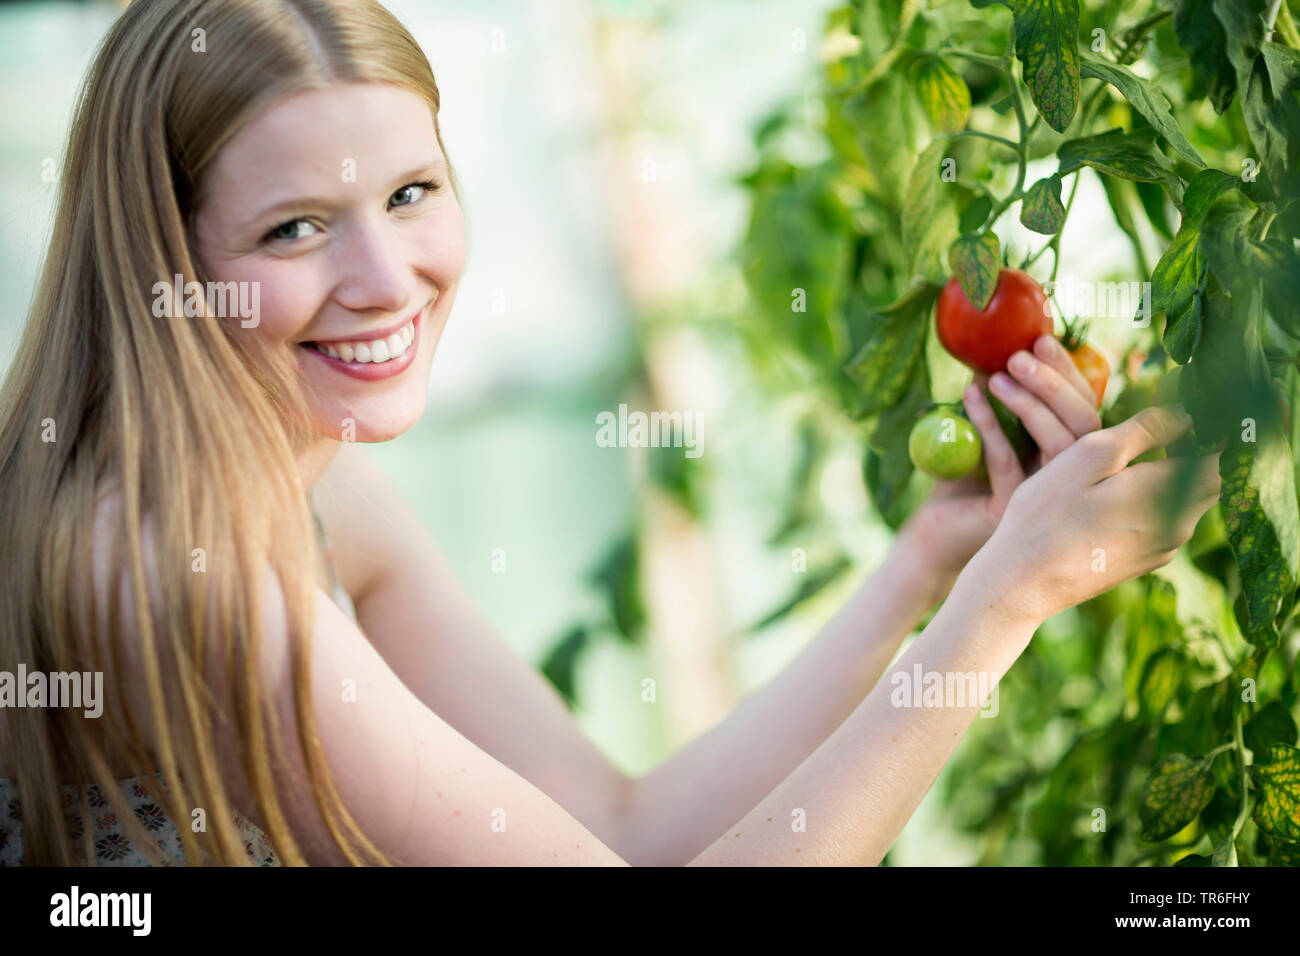 Giardino (pomodoro Solanum lycopersicum, Lycopersicon esculentum), giovane donna di essere felici per un pomodoro maturo ad una pianta di pomodoro, Germania Foto Stock